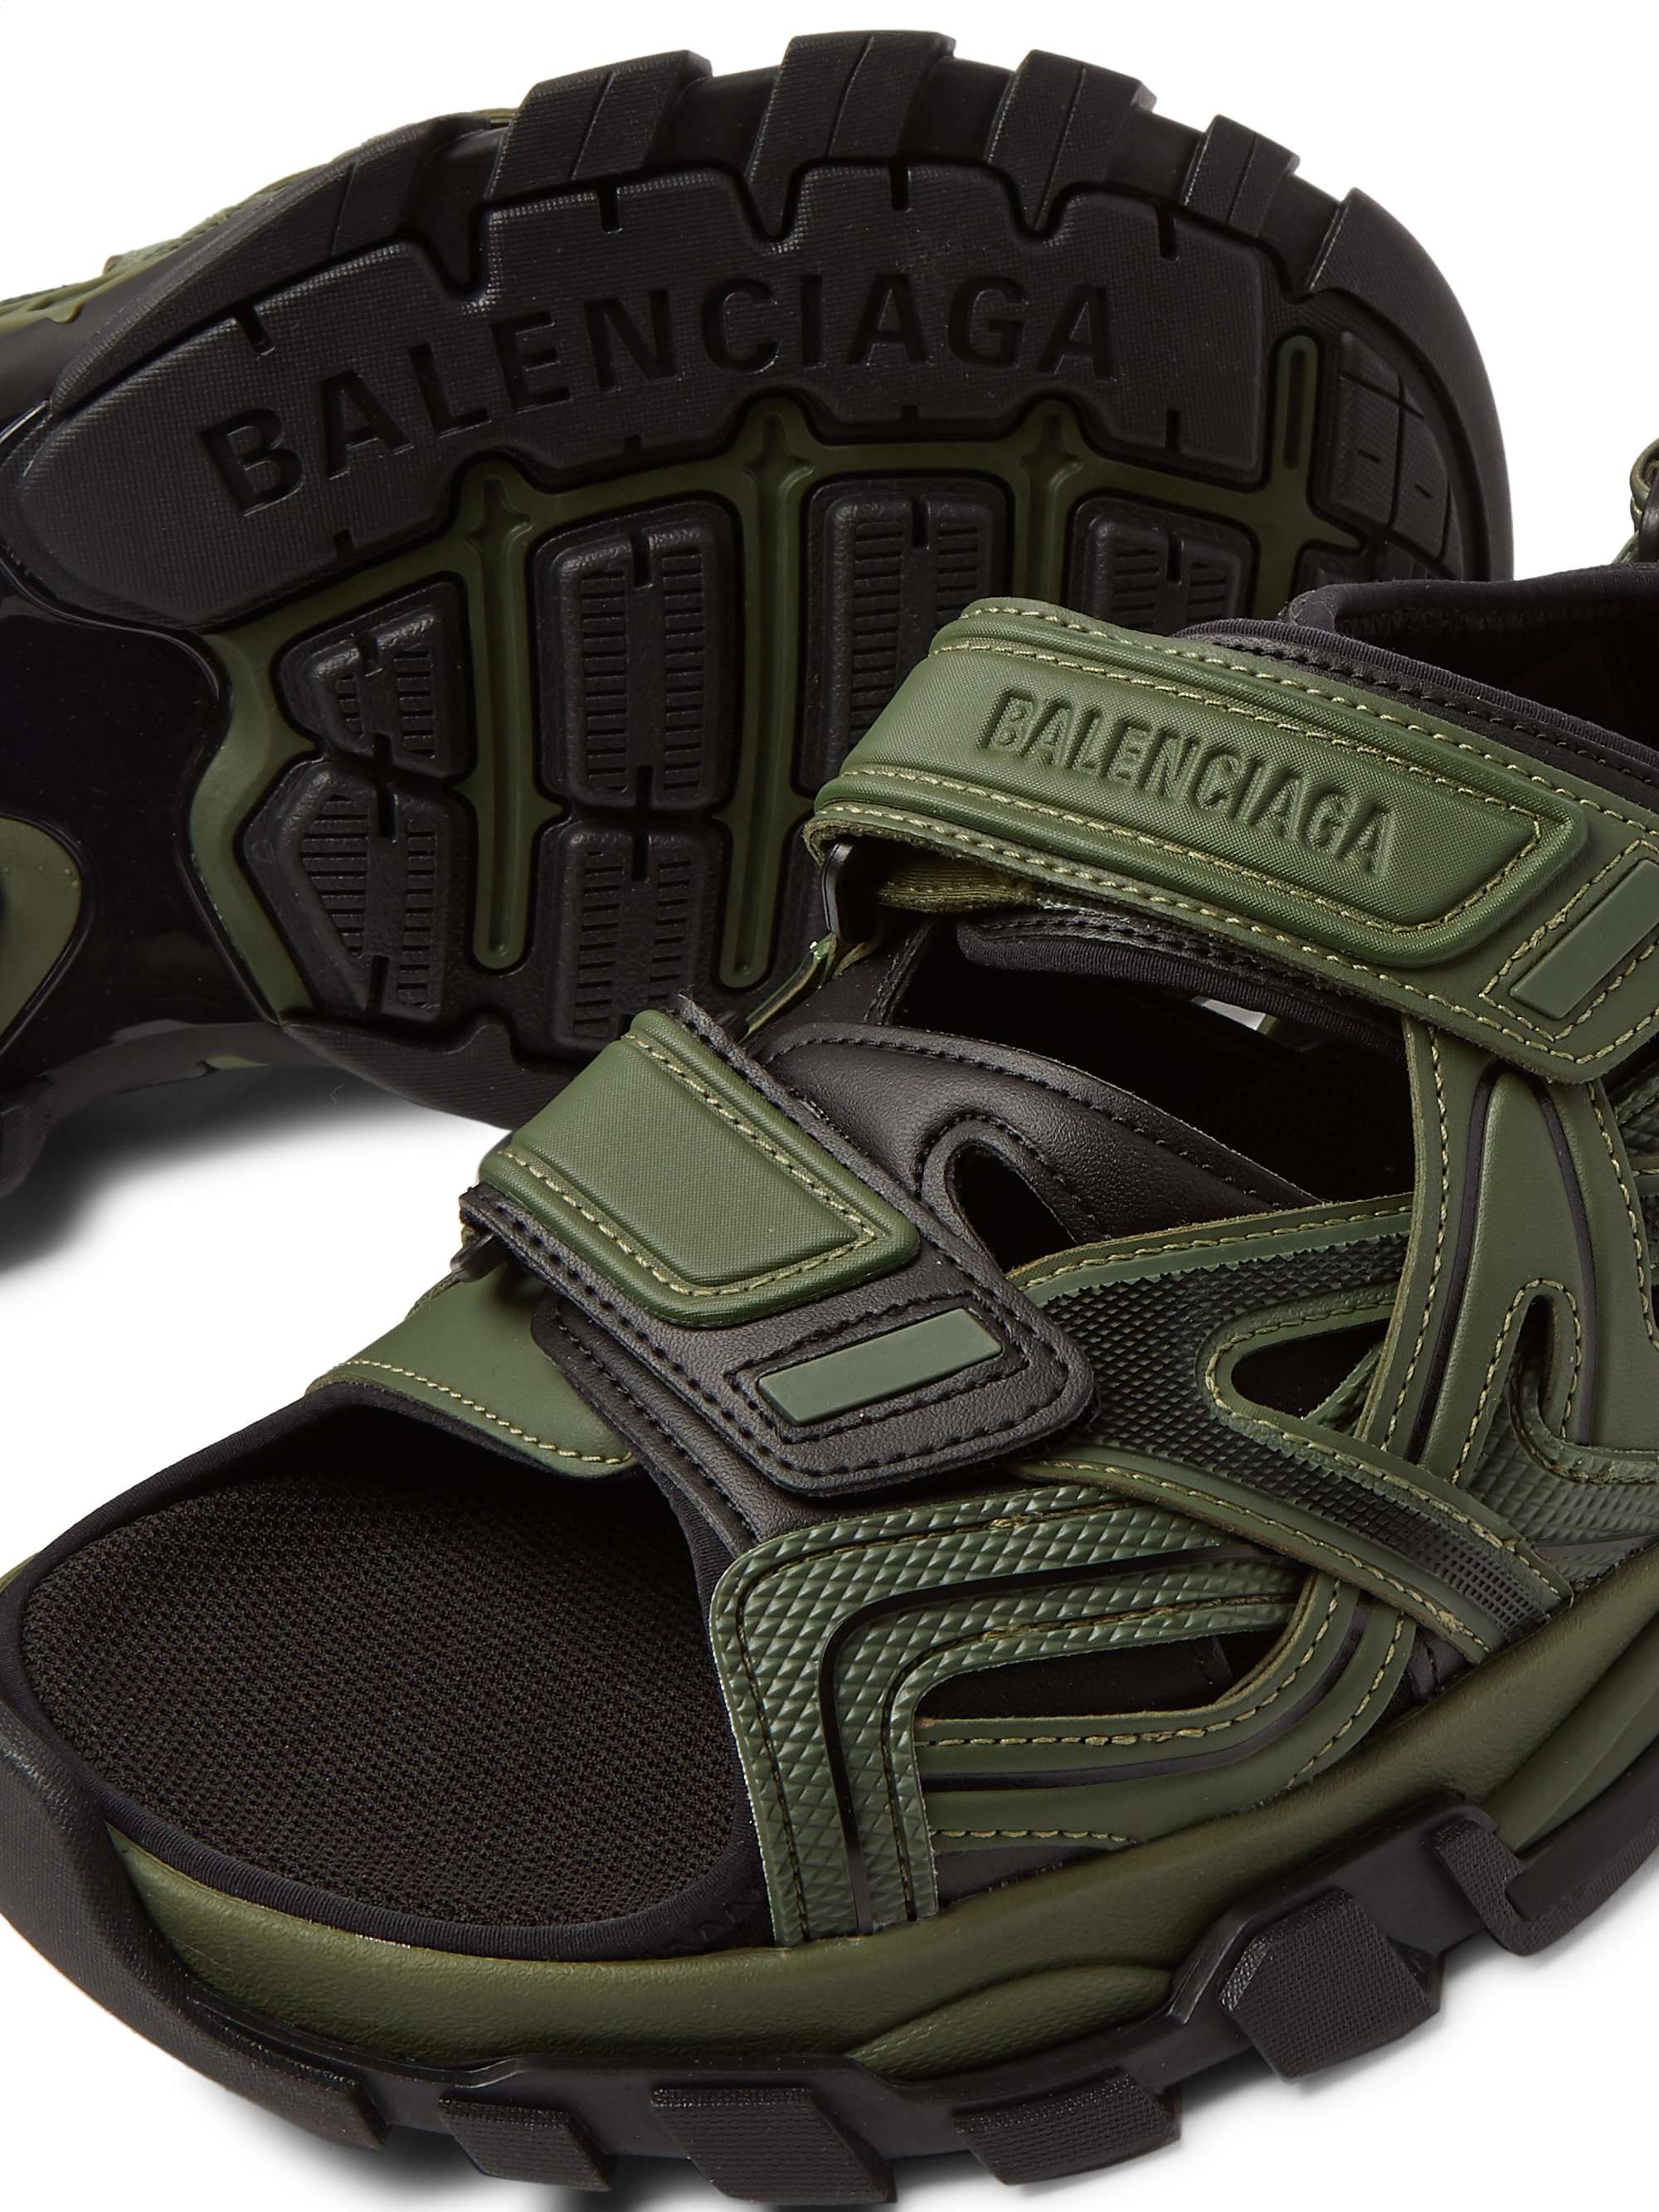 Green Track Neoprene and Rubber Sandals | BALENCIAGA | MR PORTER